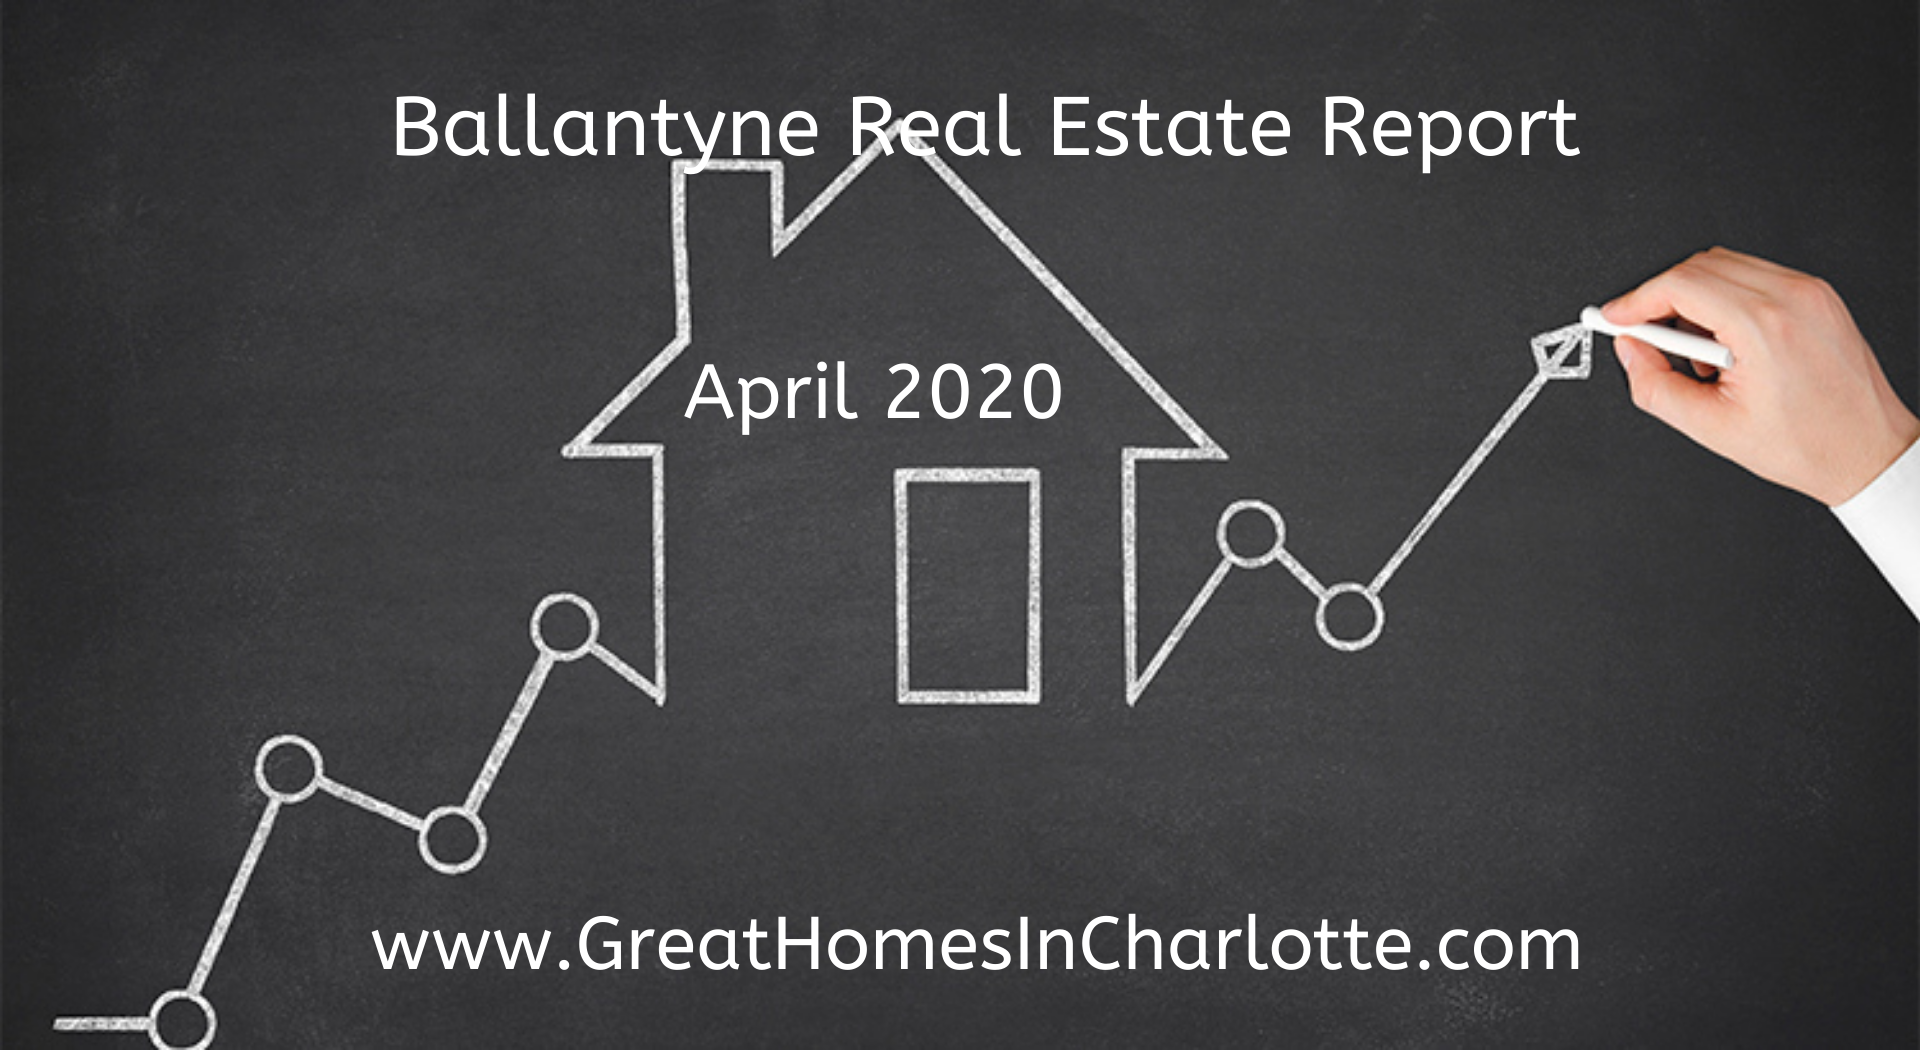 Ballantyne_Real_Estate_Report_April_2020.png